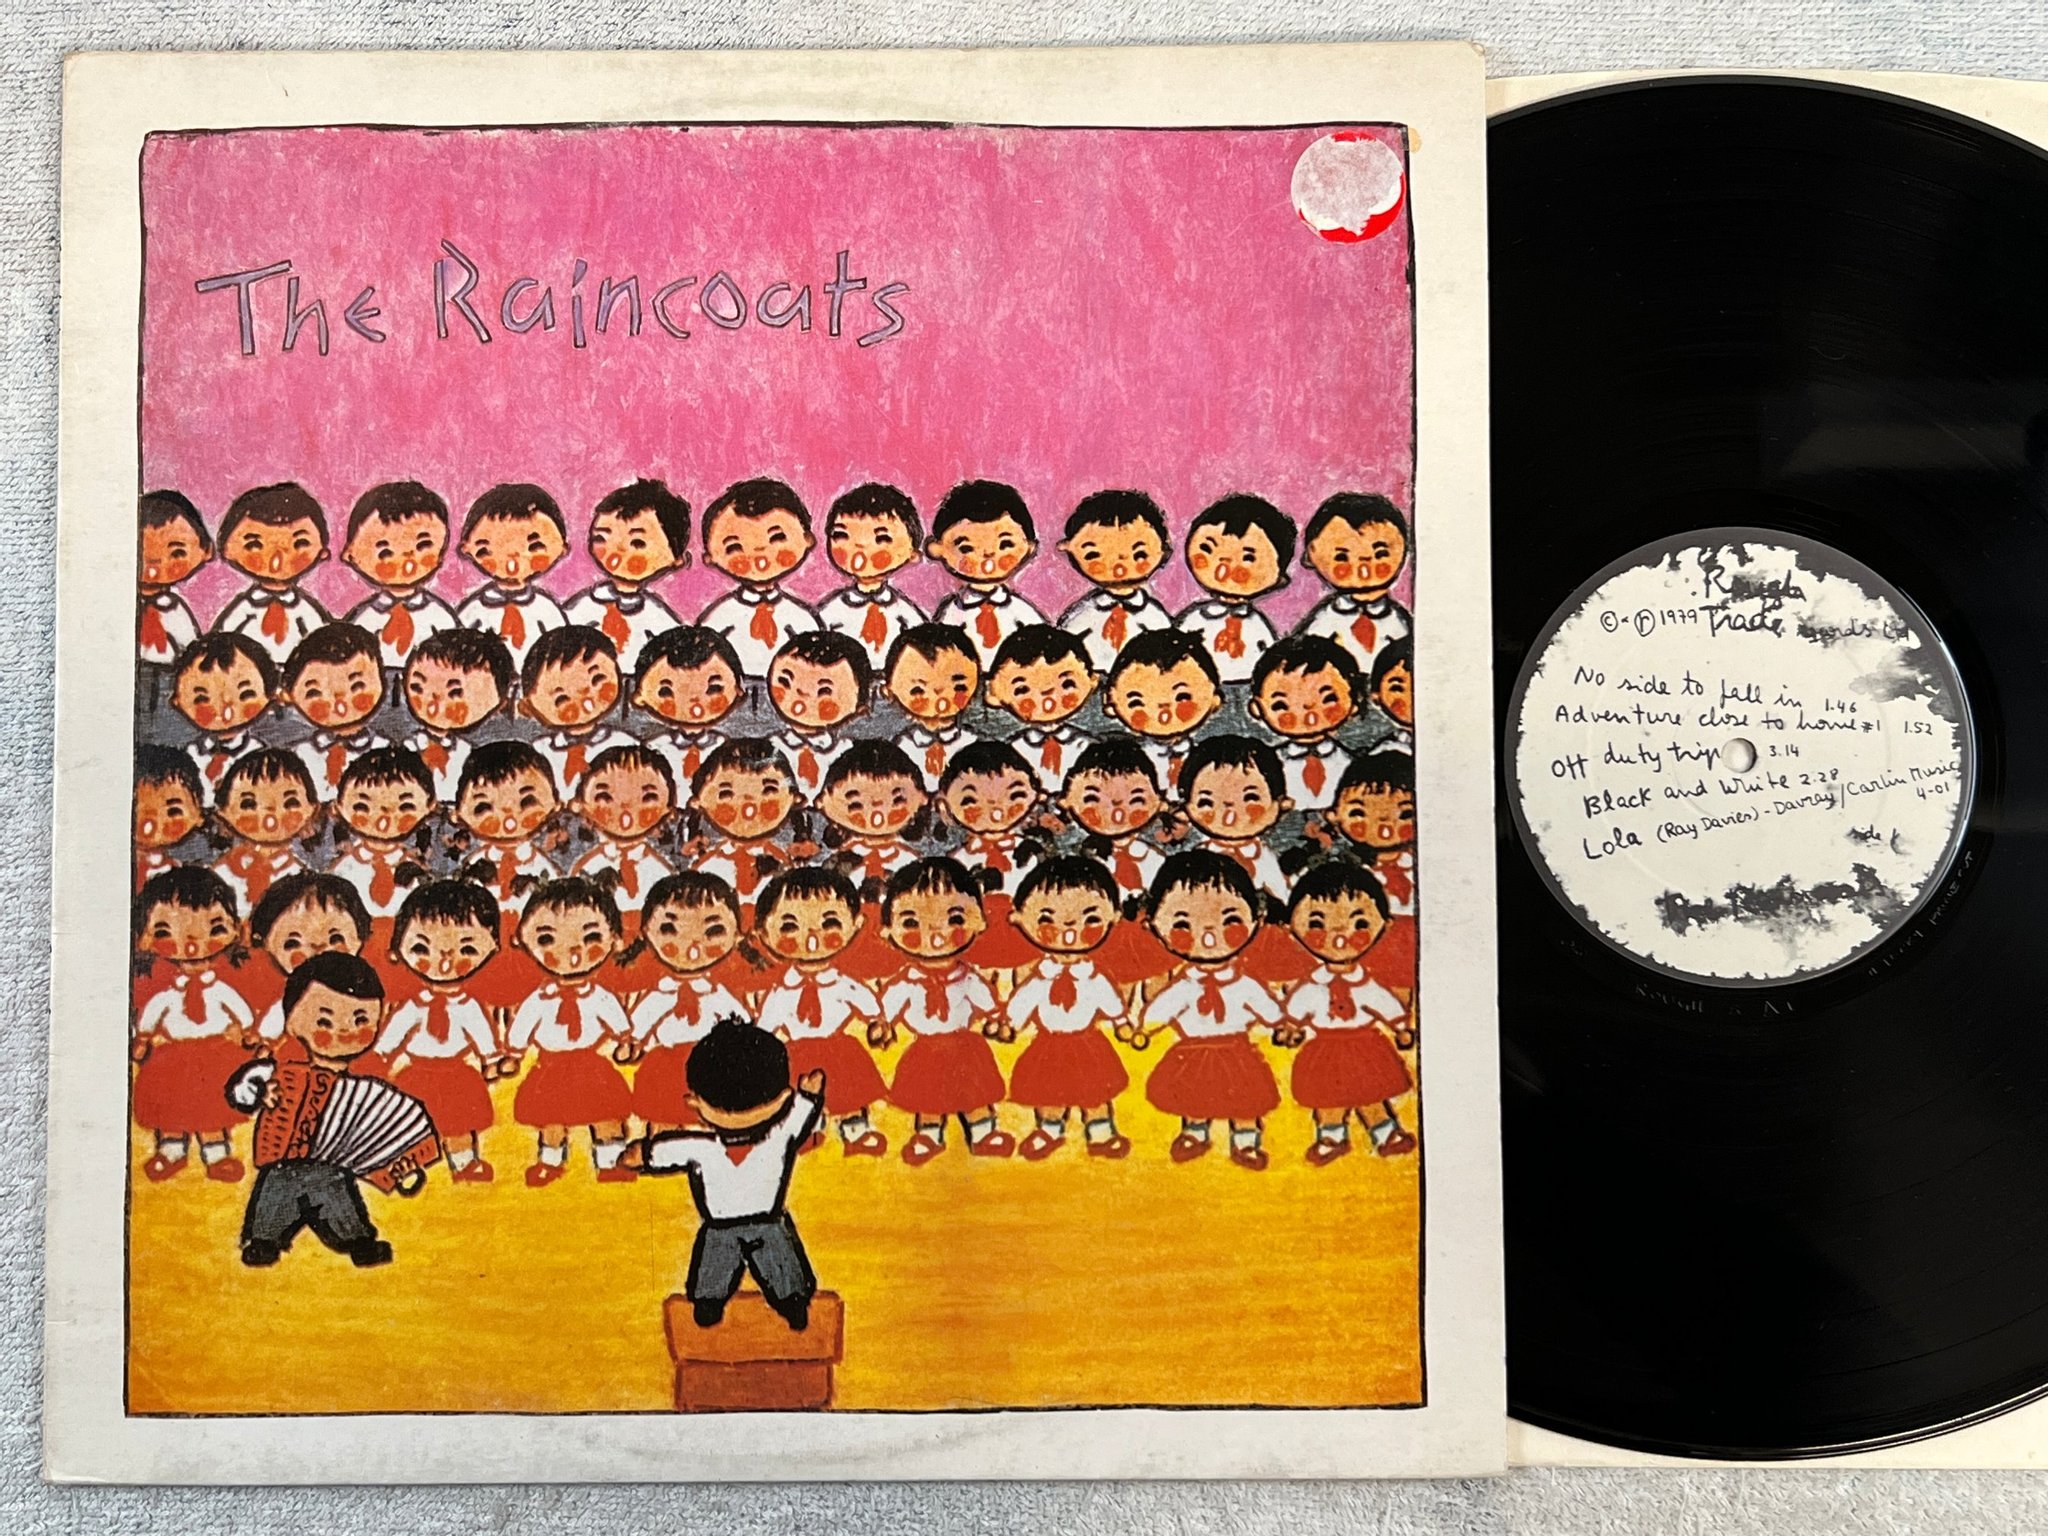 Omslagsbild för skivan THE RAINCOATS s/t LP -79 UK ROUGH TRADE ROUGH 3  rare !